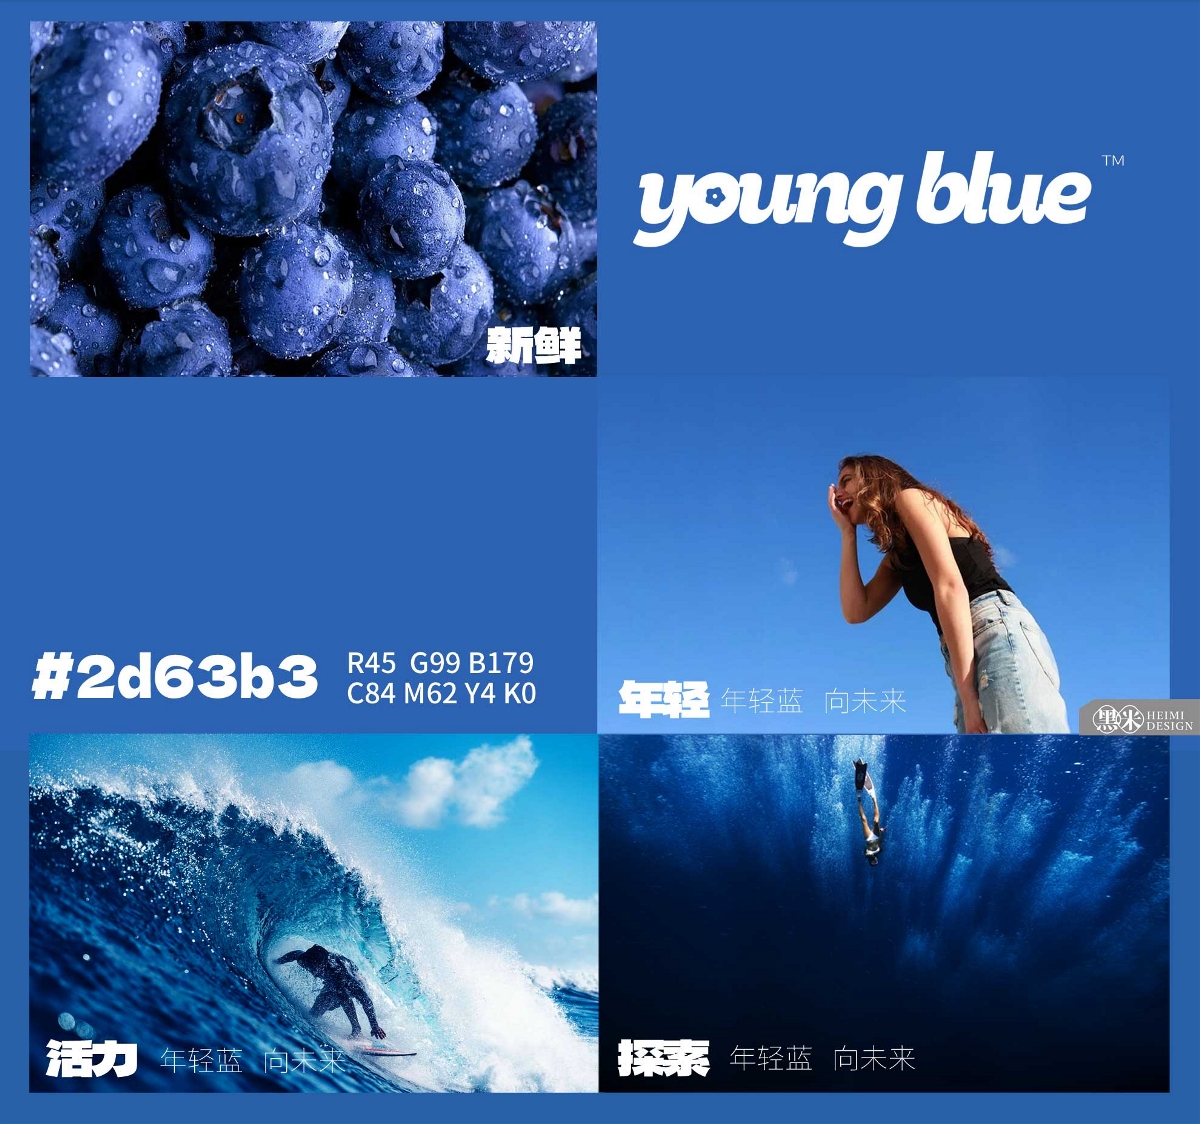 莓蓝花青 蓝莓品牌与包装整体设计   黑米品牌设计